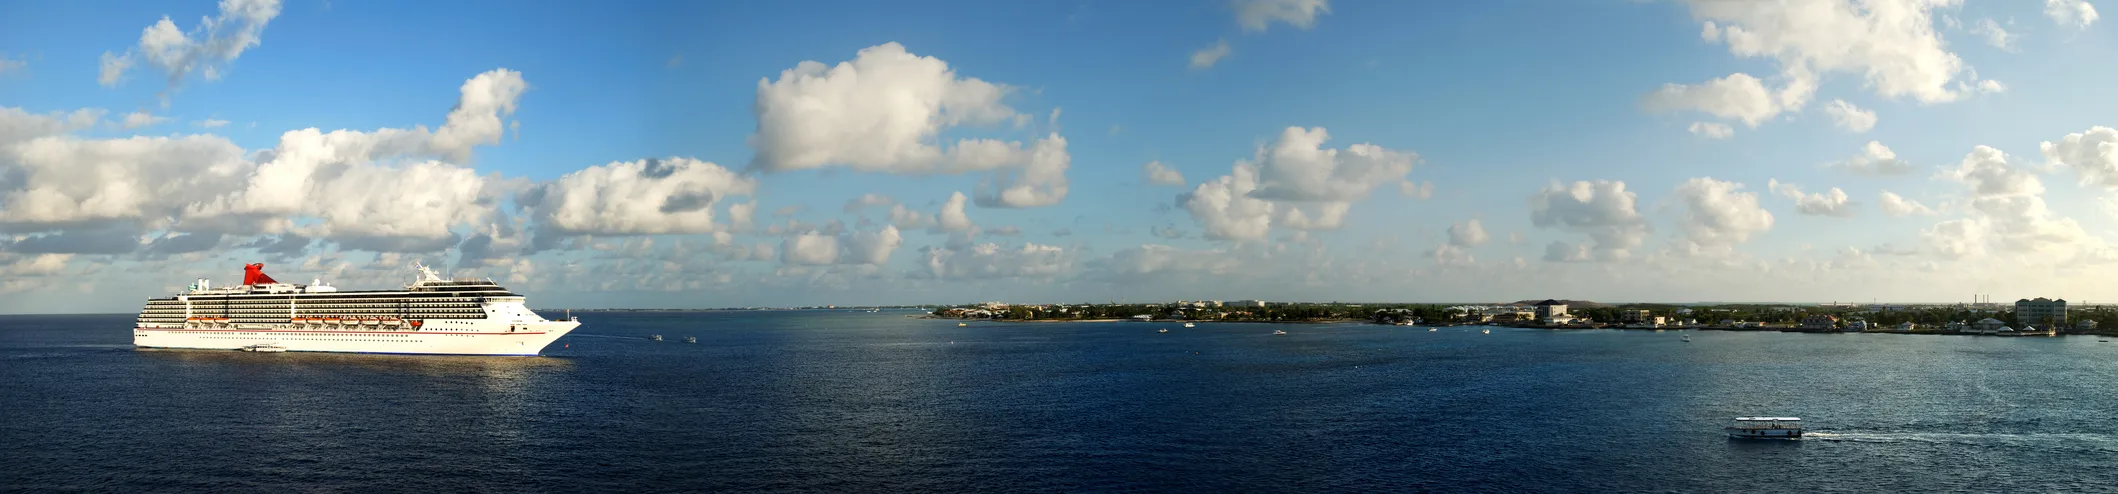 Navire de croisière près de George Town sur l'île de Grand Cayman (îles Caïmans), dans les Caraïbes